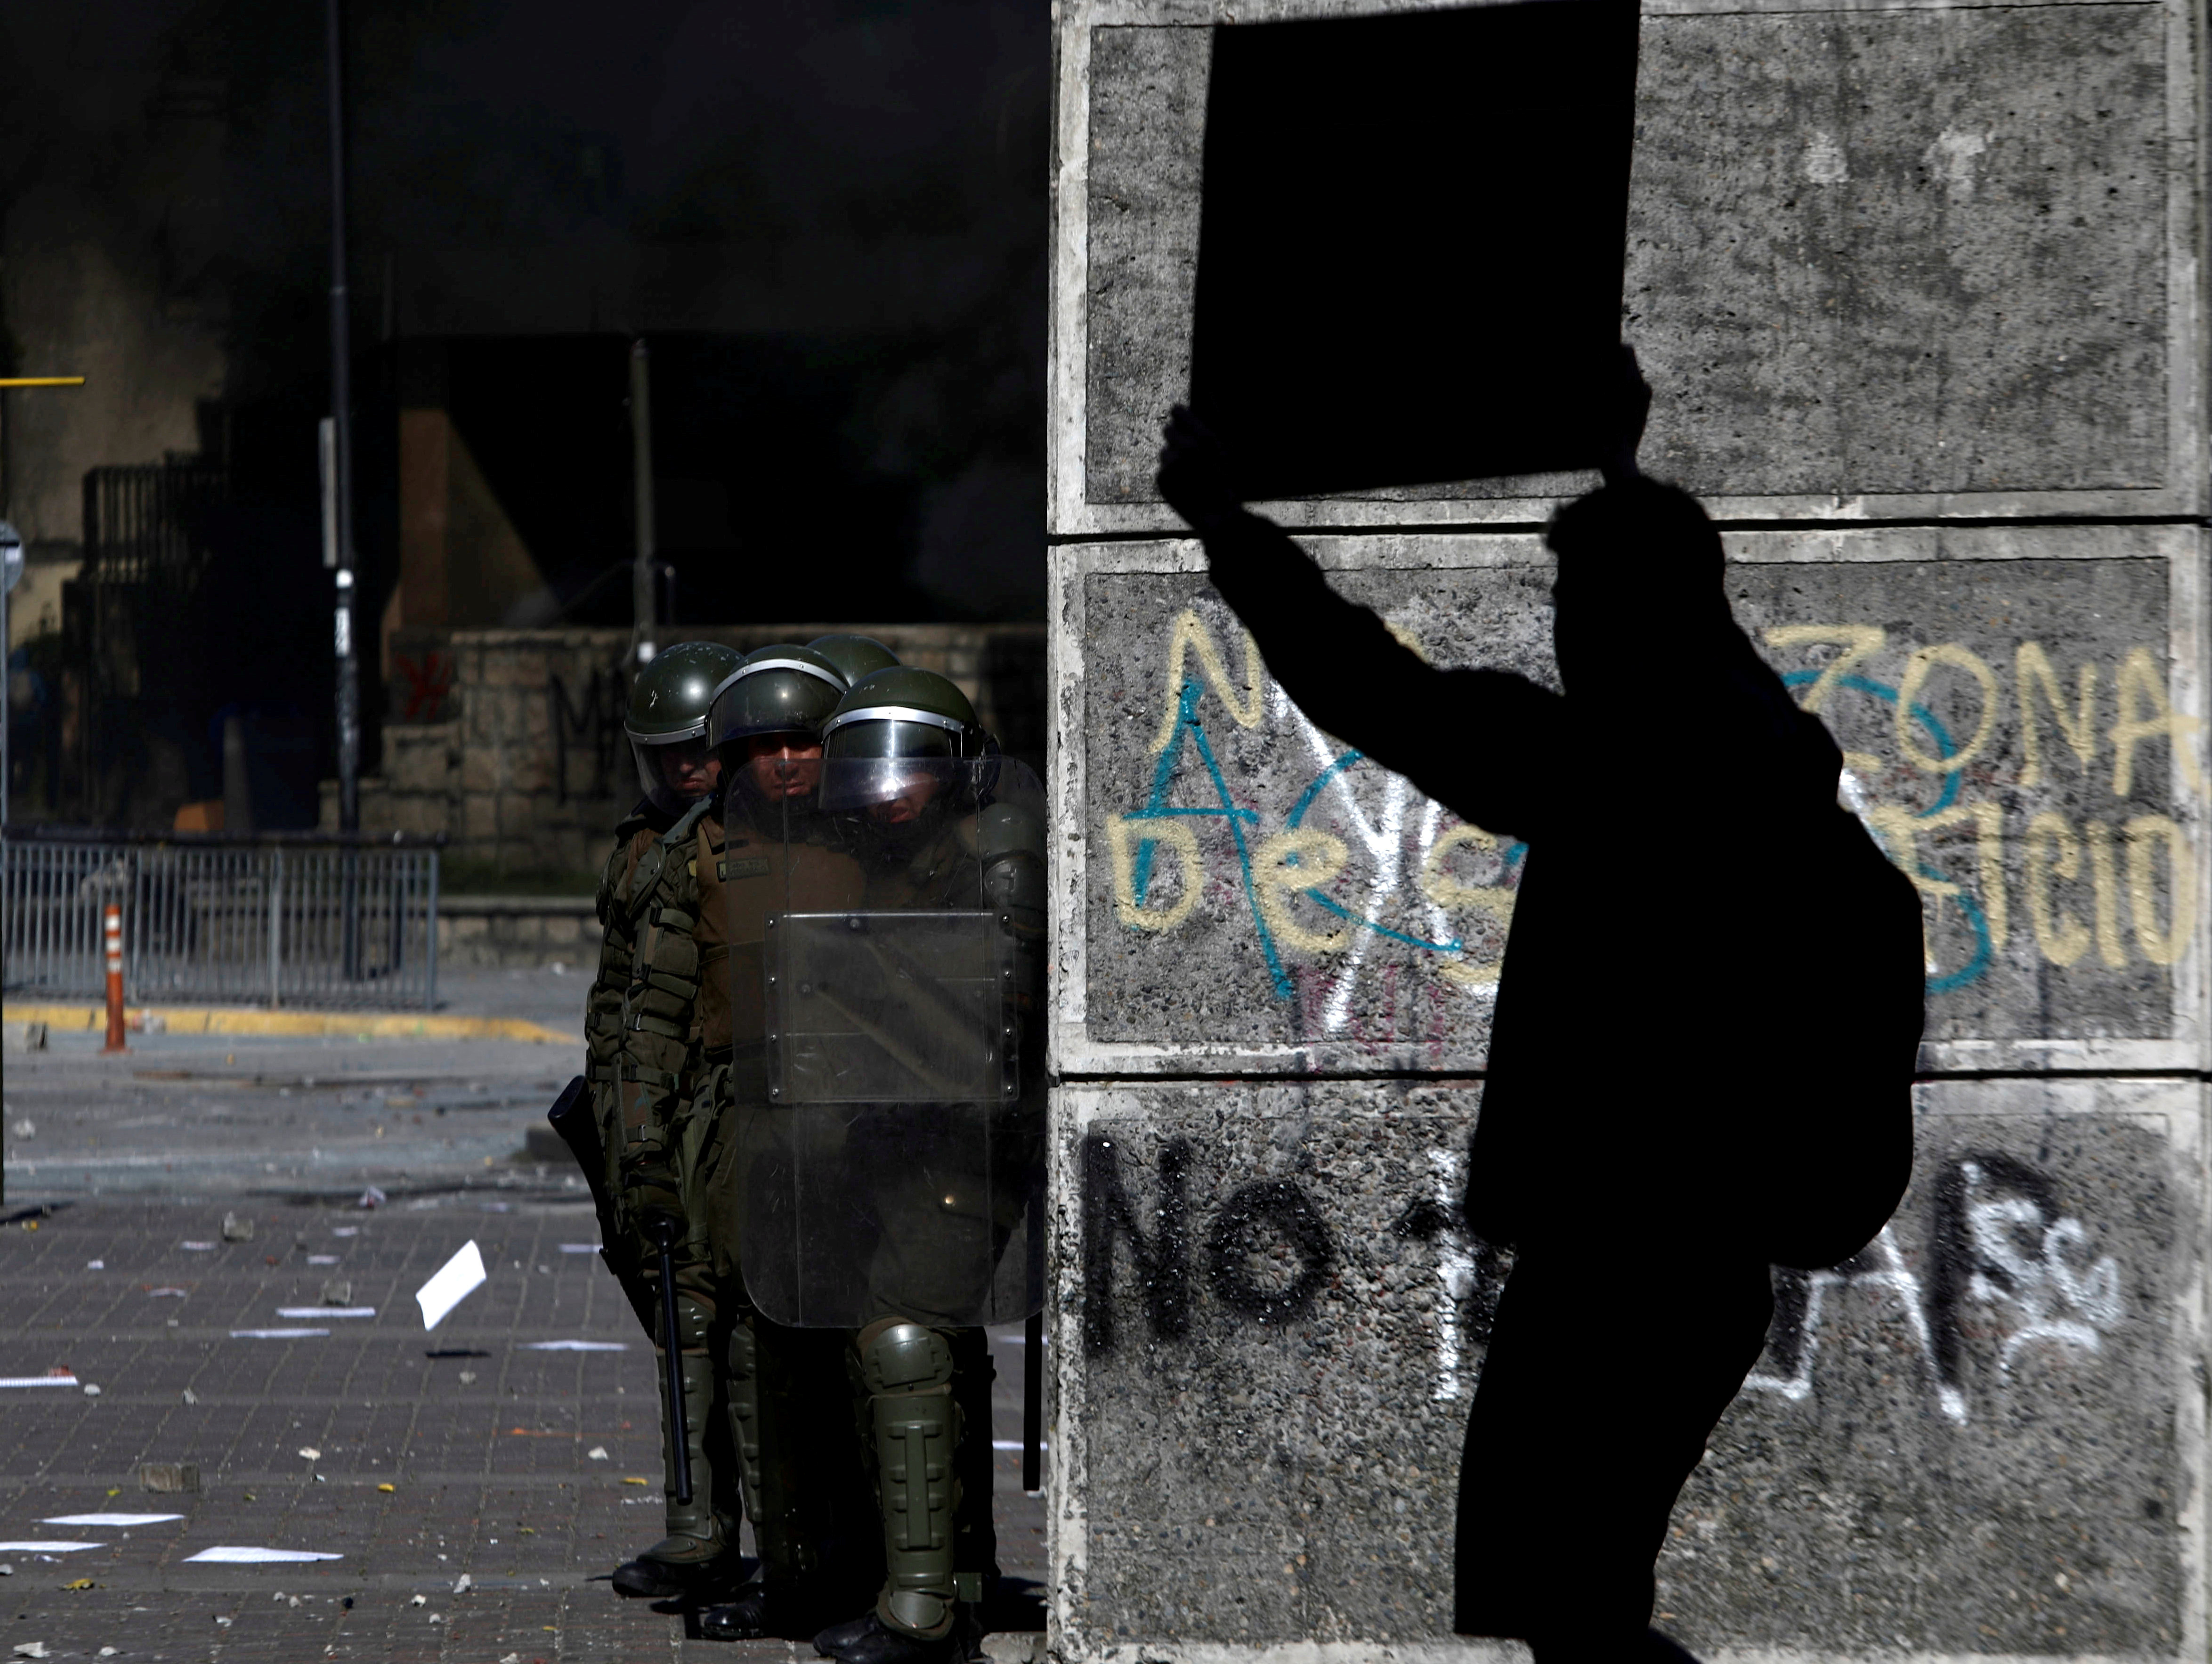 Sindicatos van a huelga general en Chile pese a giro conciliador de Piñera